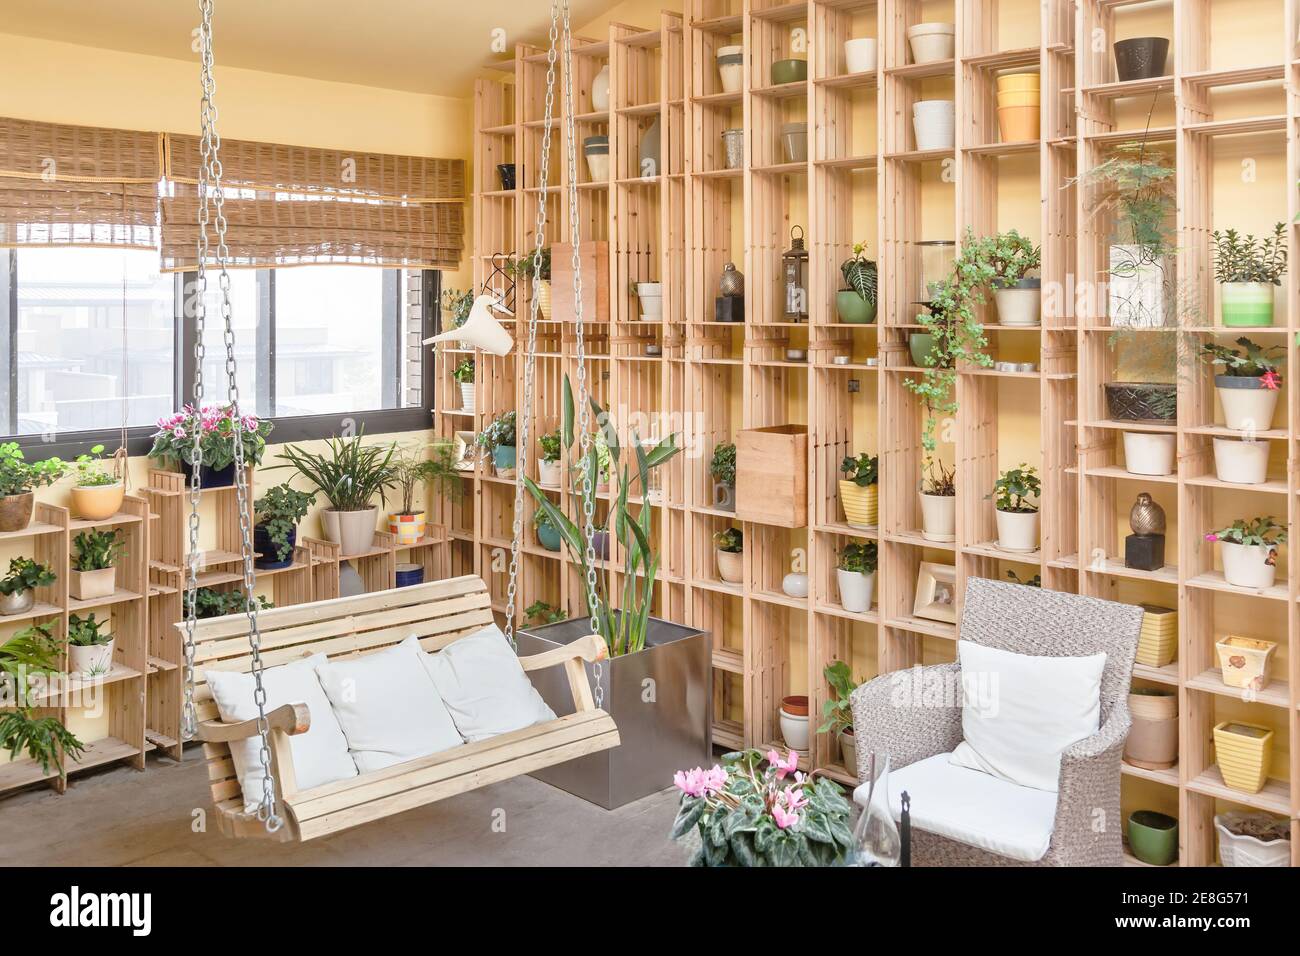 Schönes Wohnzimmer mit Schaukel Stuhl und Stock Sofa, stilvolle grüne  Pflanzen und Dekorationen auf Holzregalen Stockfotografie - Alamy